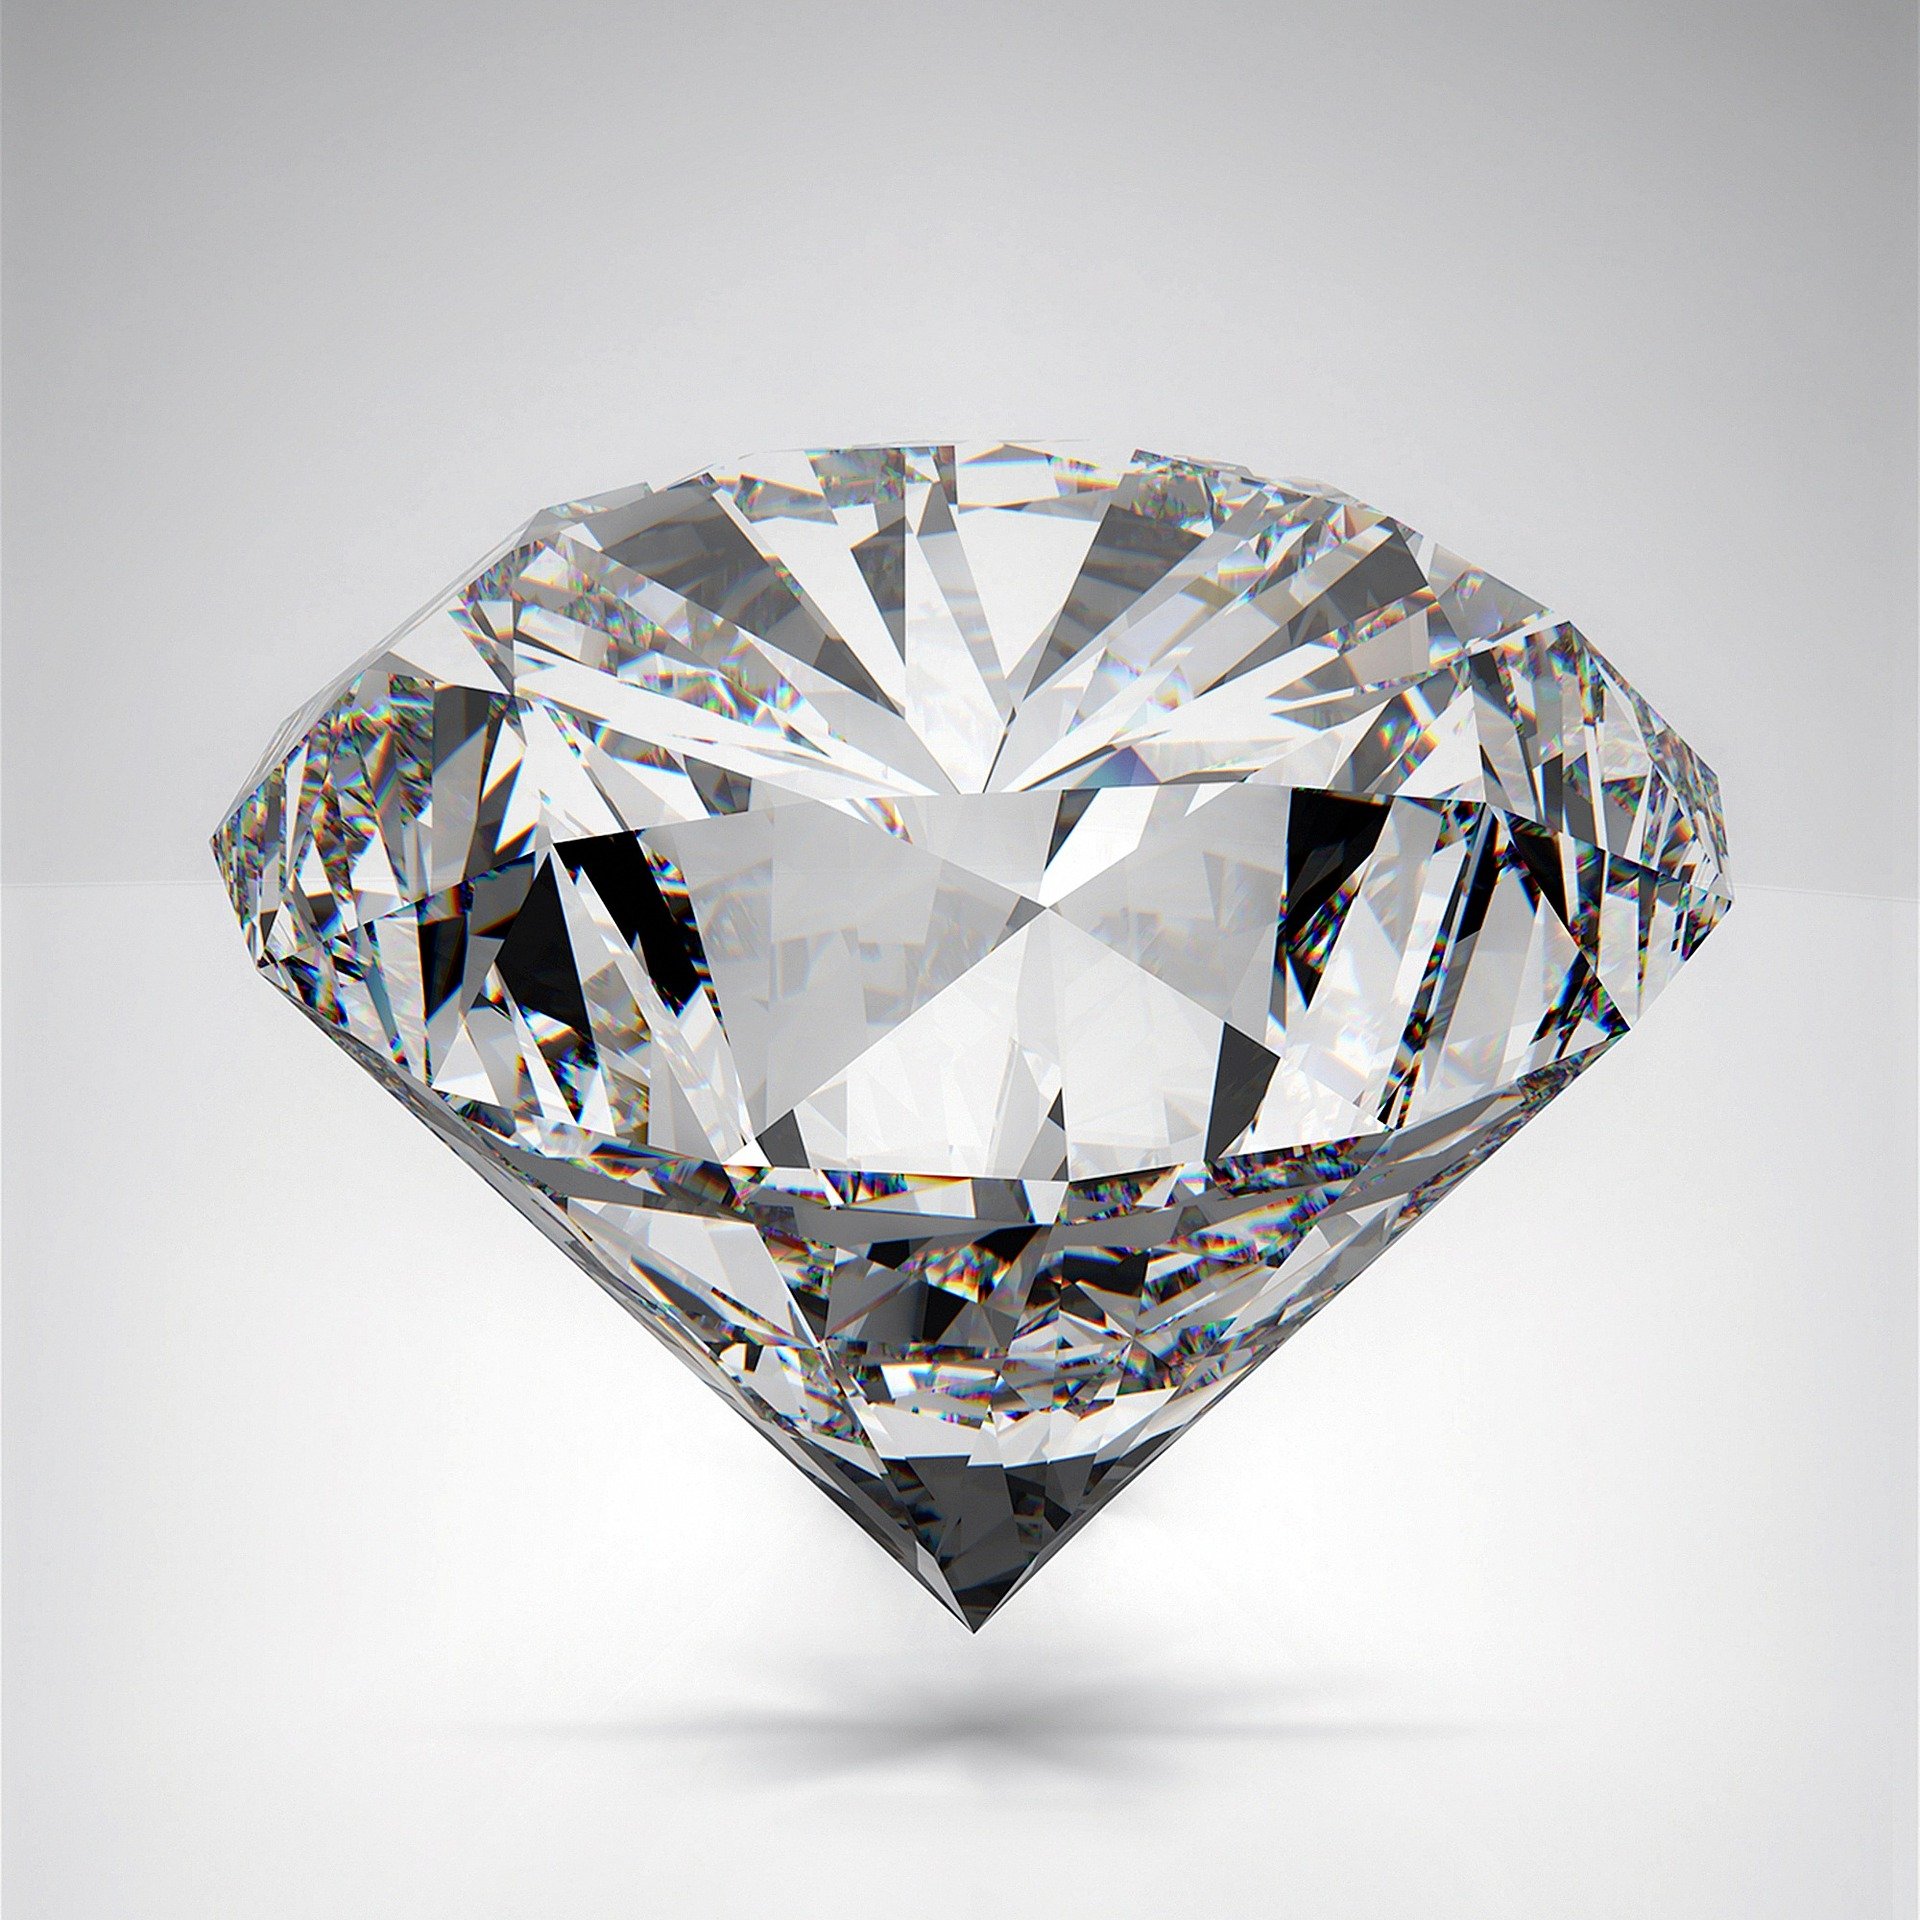 diamond g826baabd1 1920